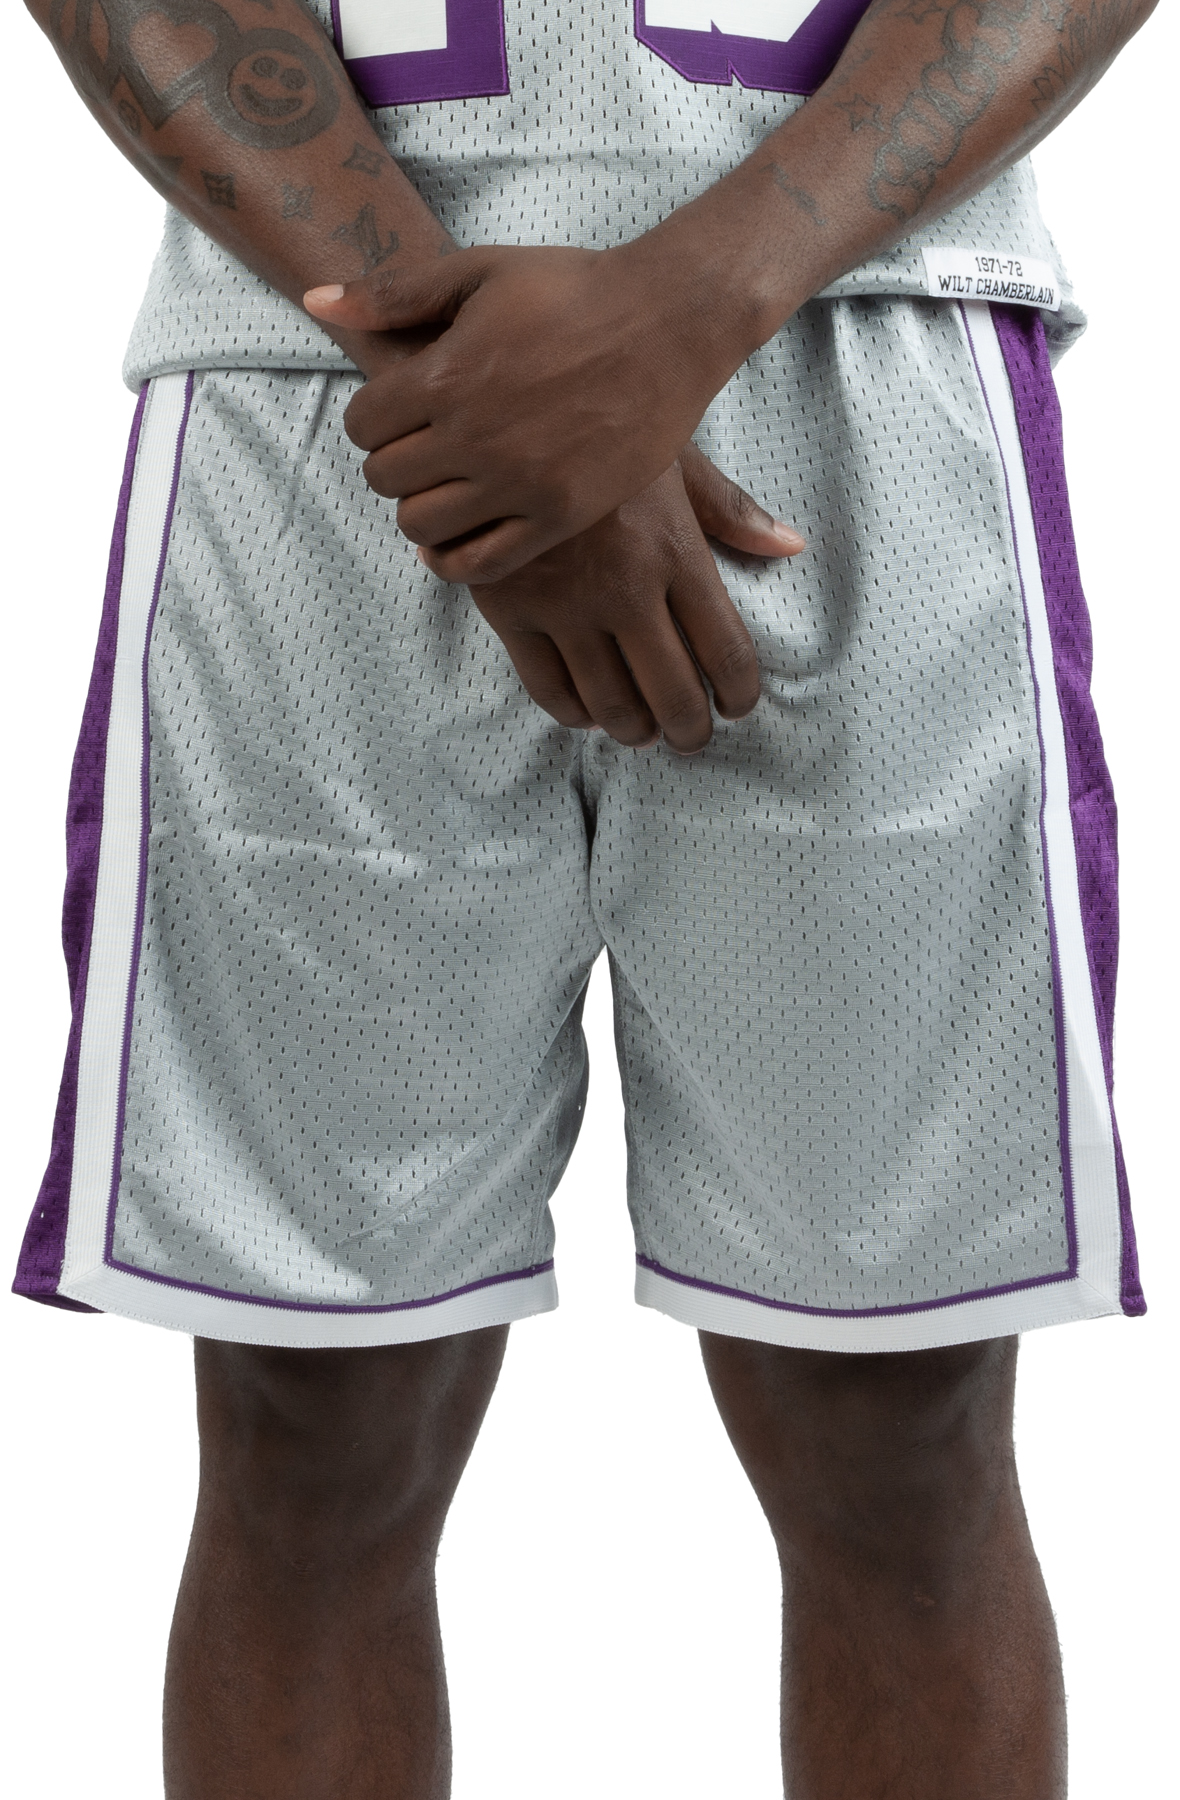 Los Angeles Lakers Starting 5 Men's Nike Dri-Fit NBA Shorts